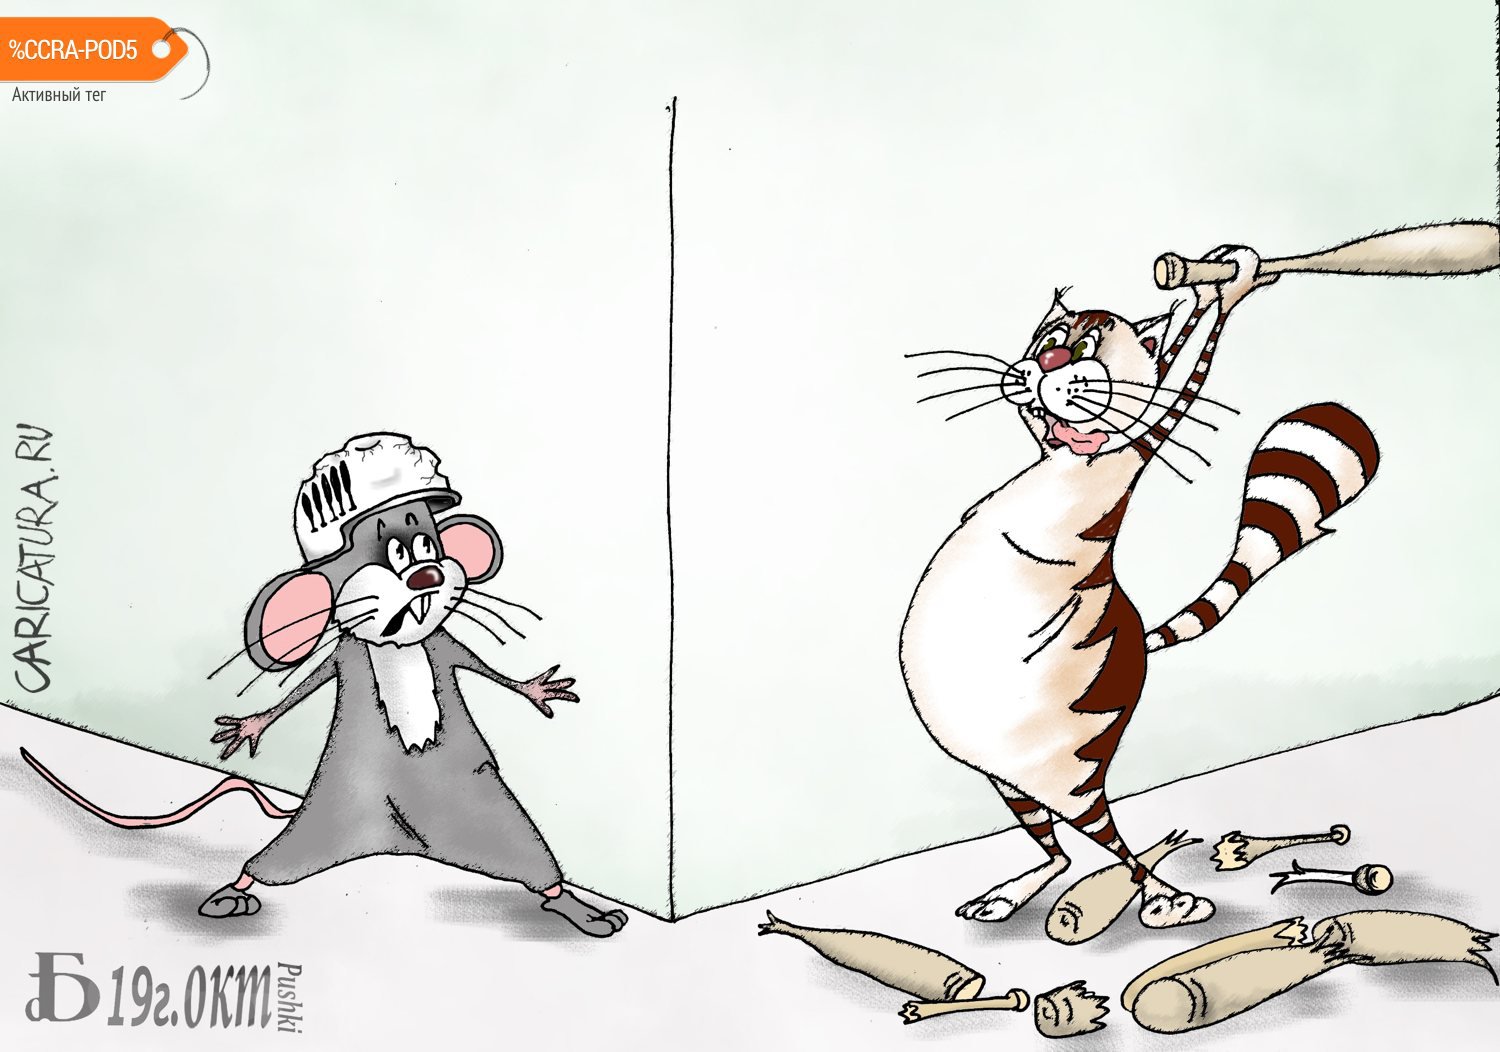 Карикатура "Про засаду", Борис Демин